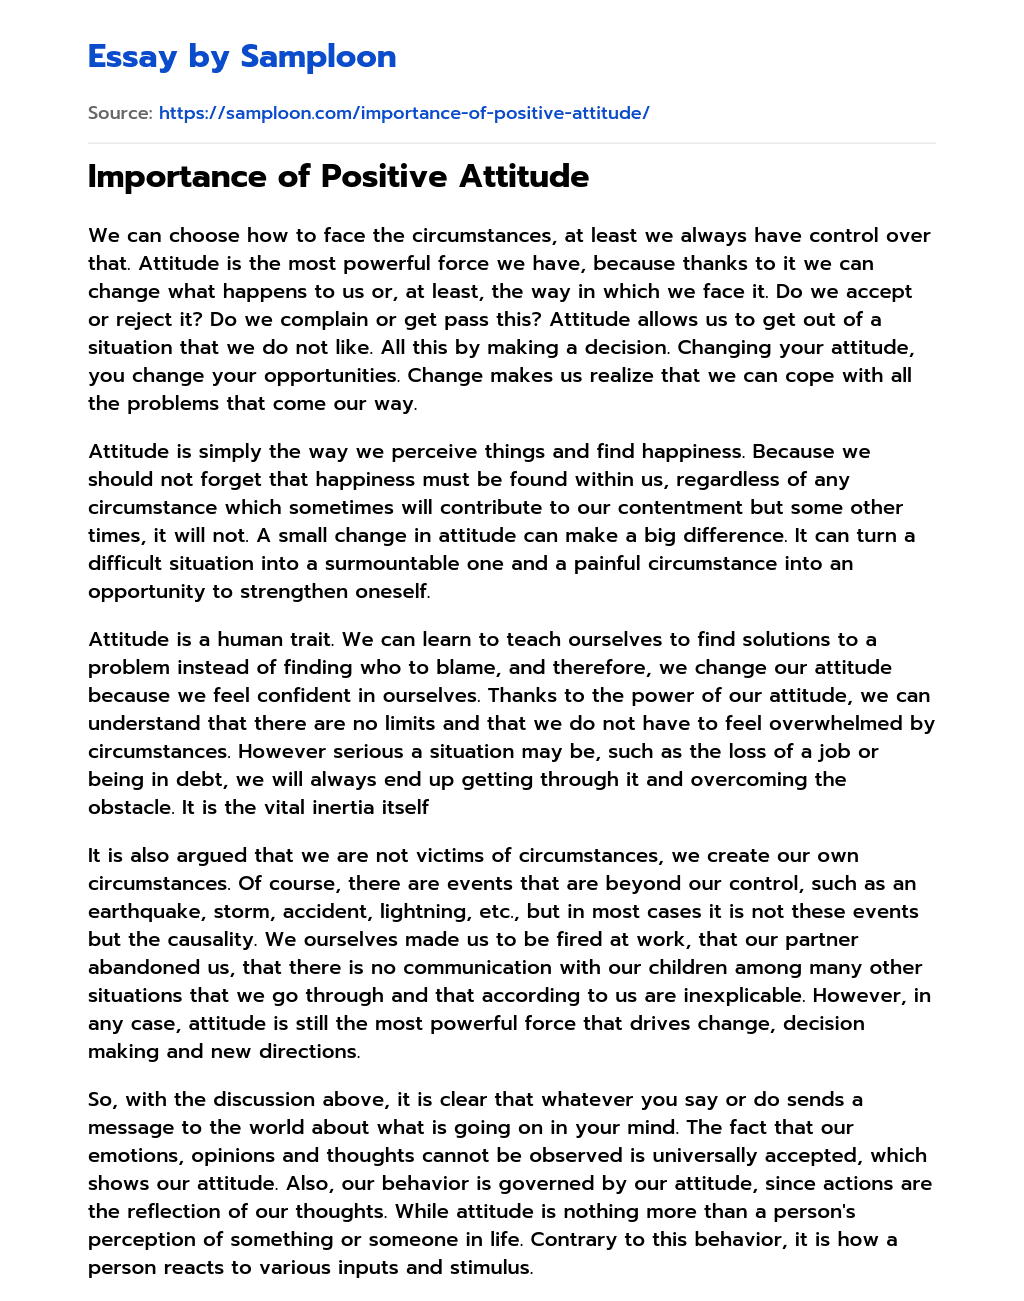 positive attitude essay in english